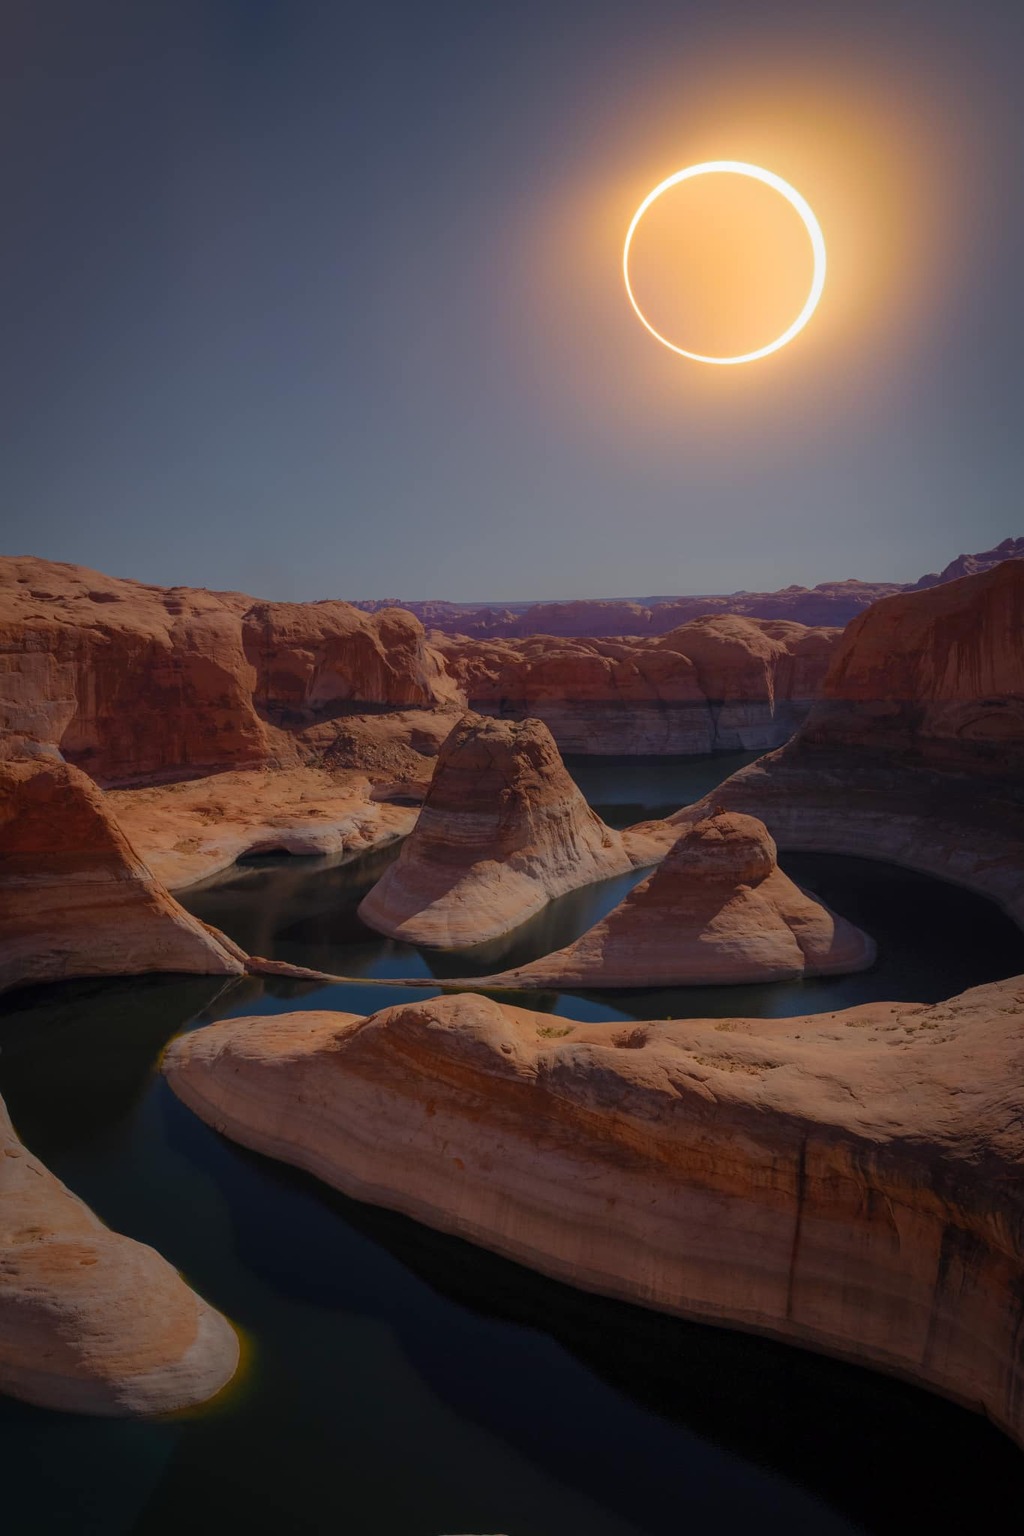 imagem composta tirada em Reflection Canyon, em Utah, mostrando o eclipse